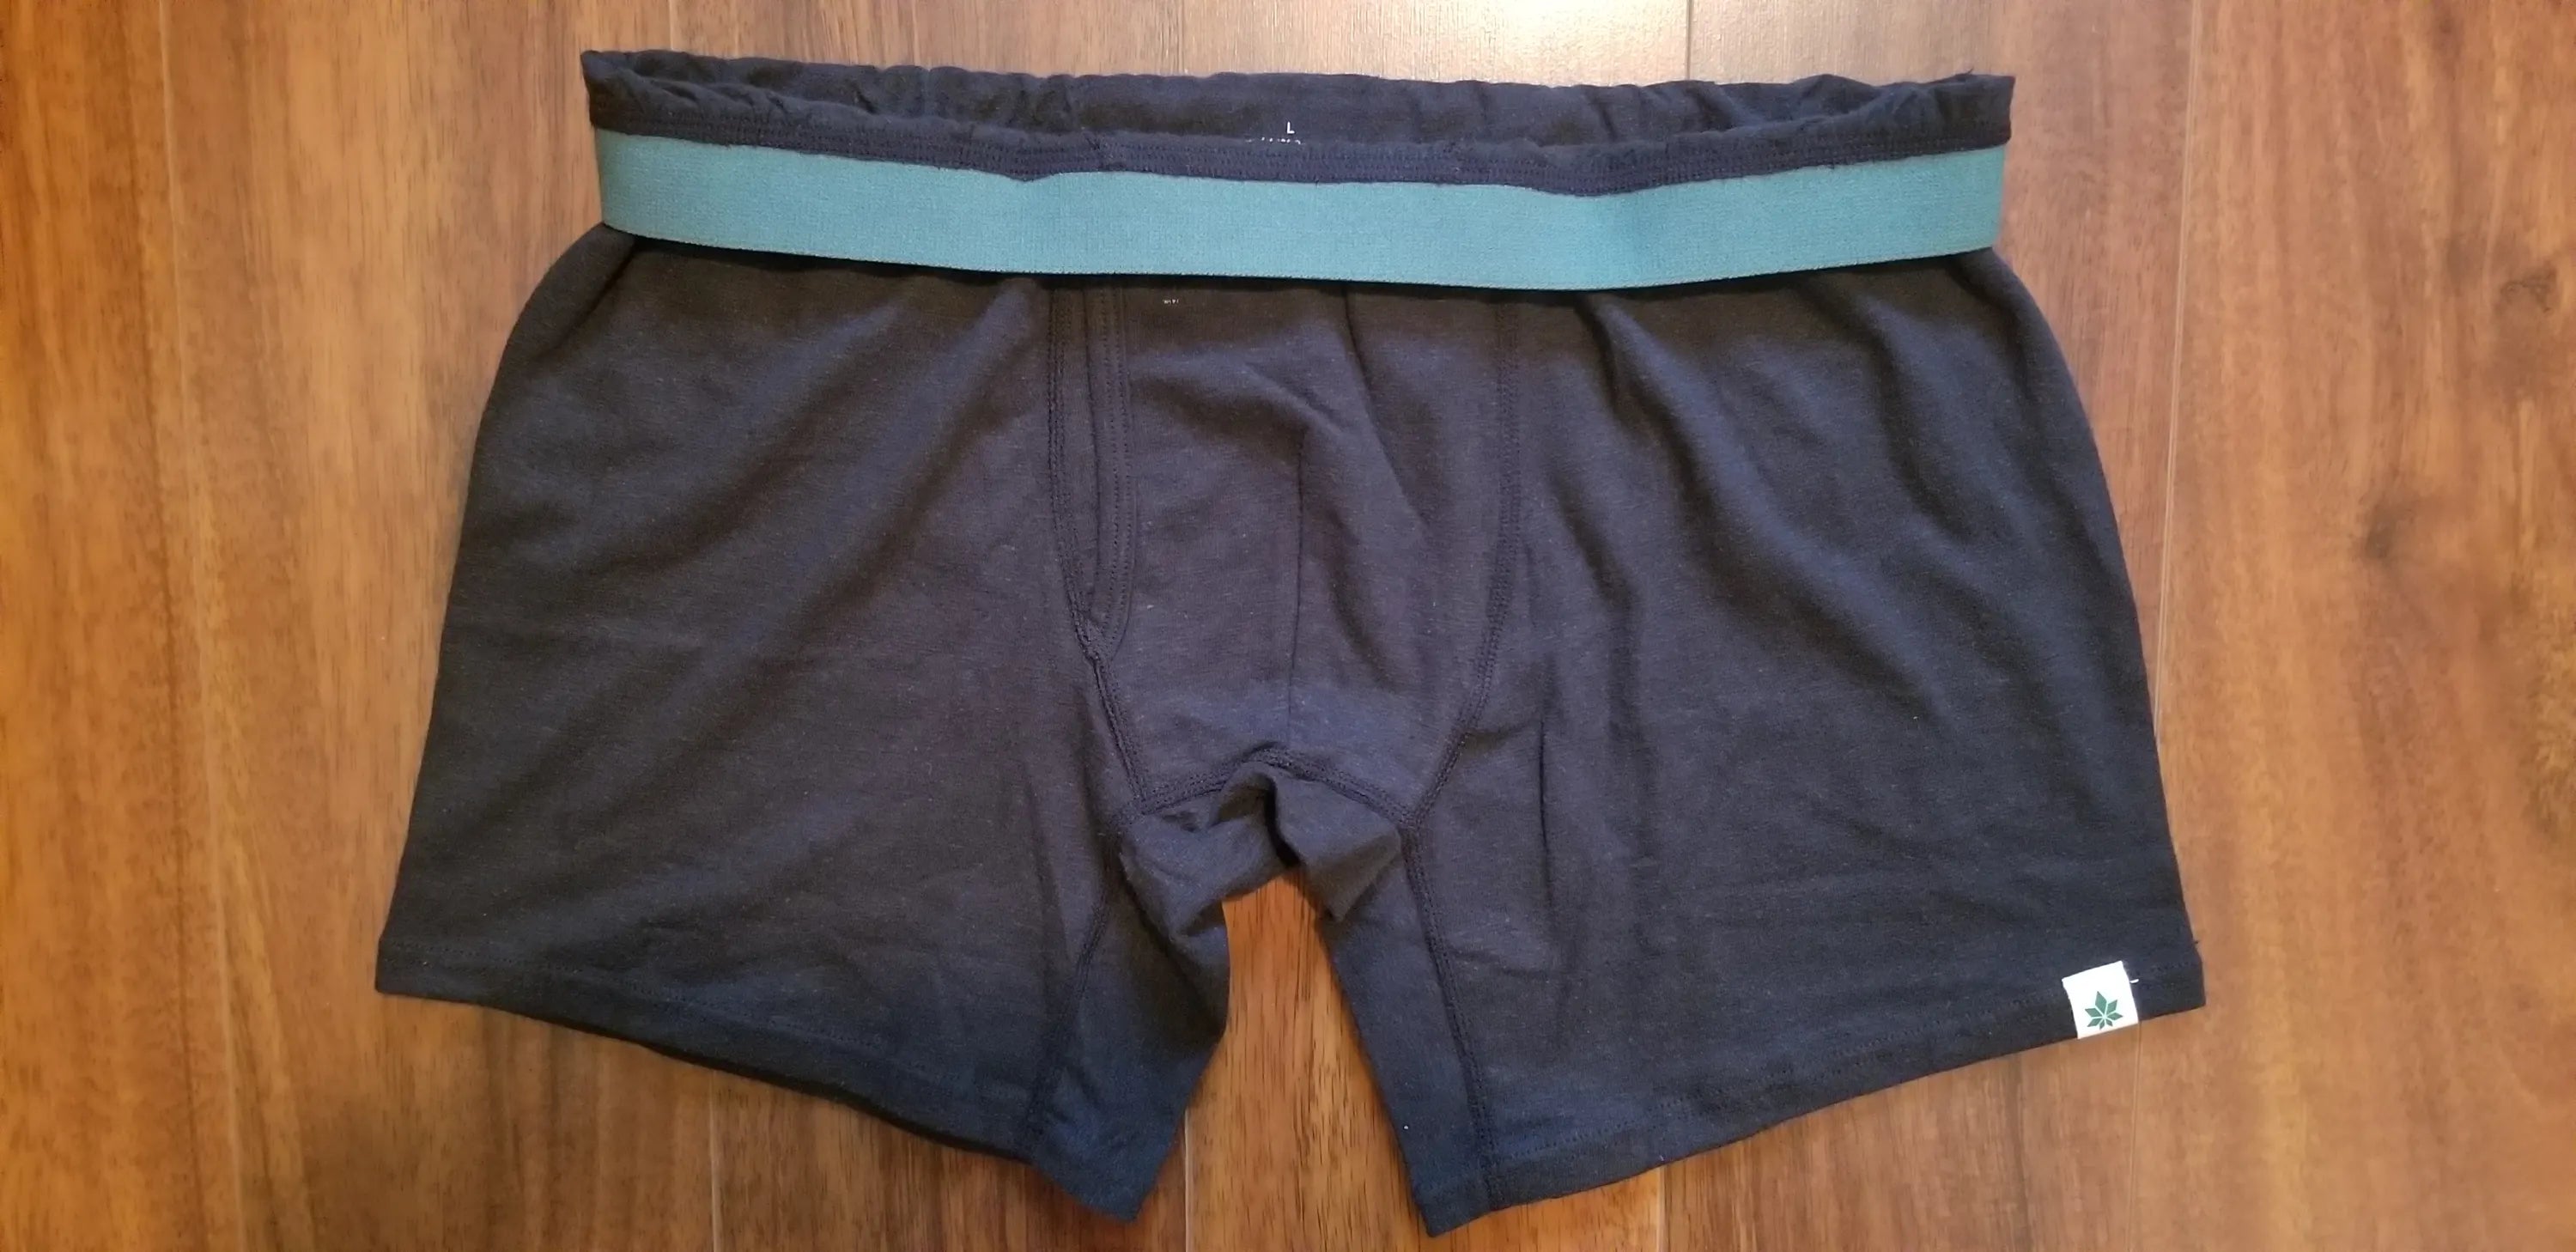 How To Fold Underwear Pt. 2 - Boxers, Briefs + Boxer Briefs 